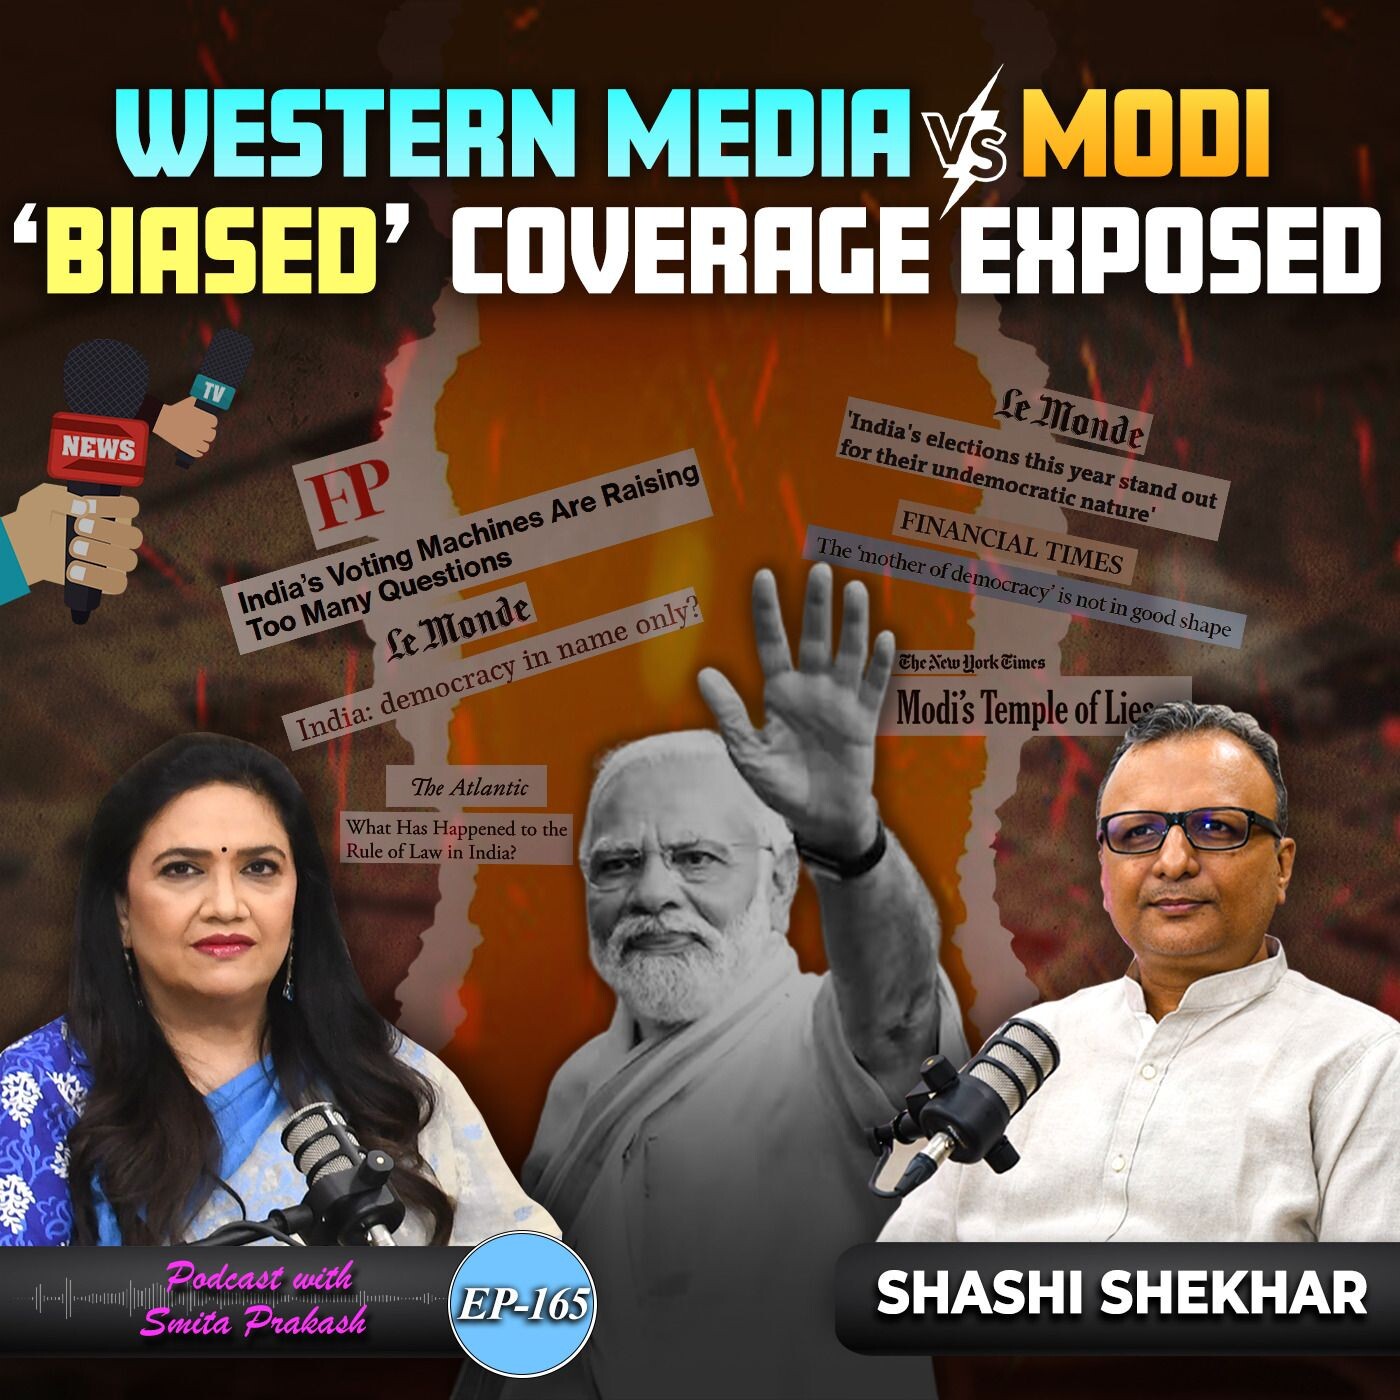 EP 165 - Exposing Global Media’s ’Bias’ on Modi & India with Shashi Shekhar